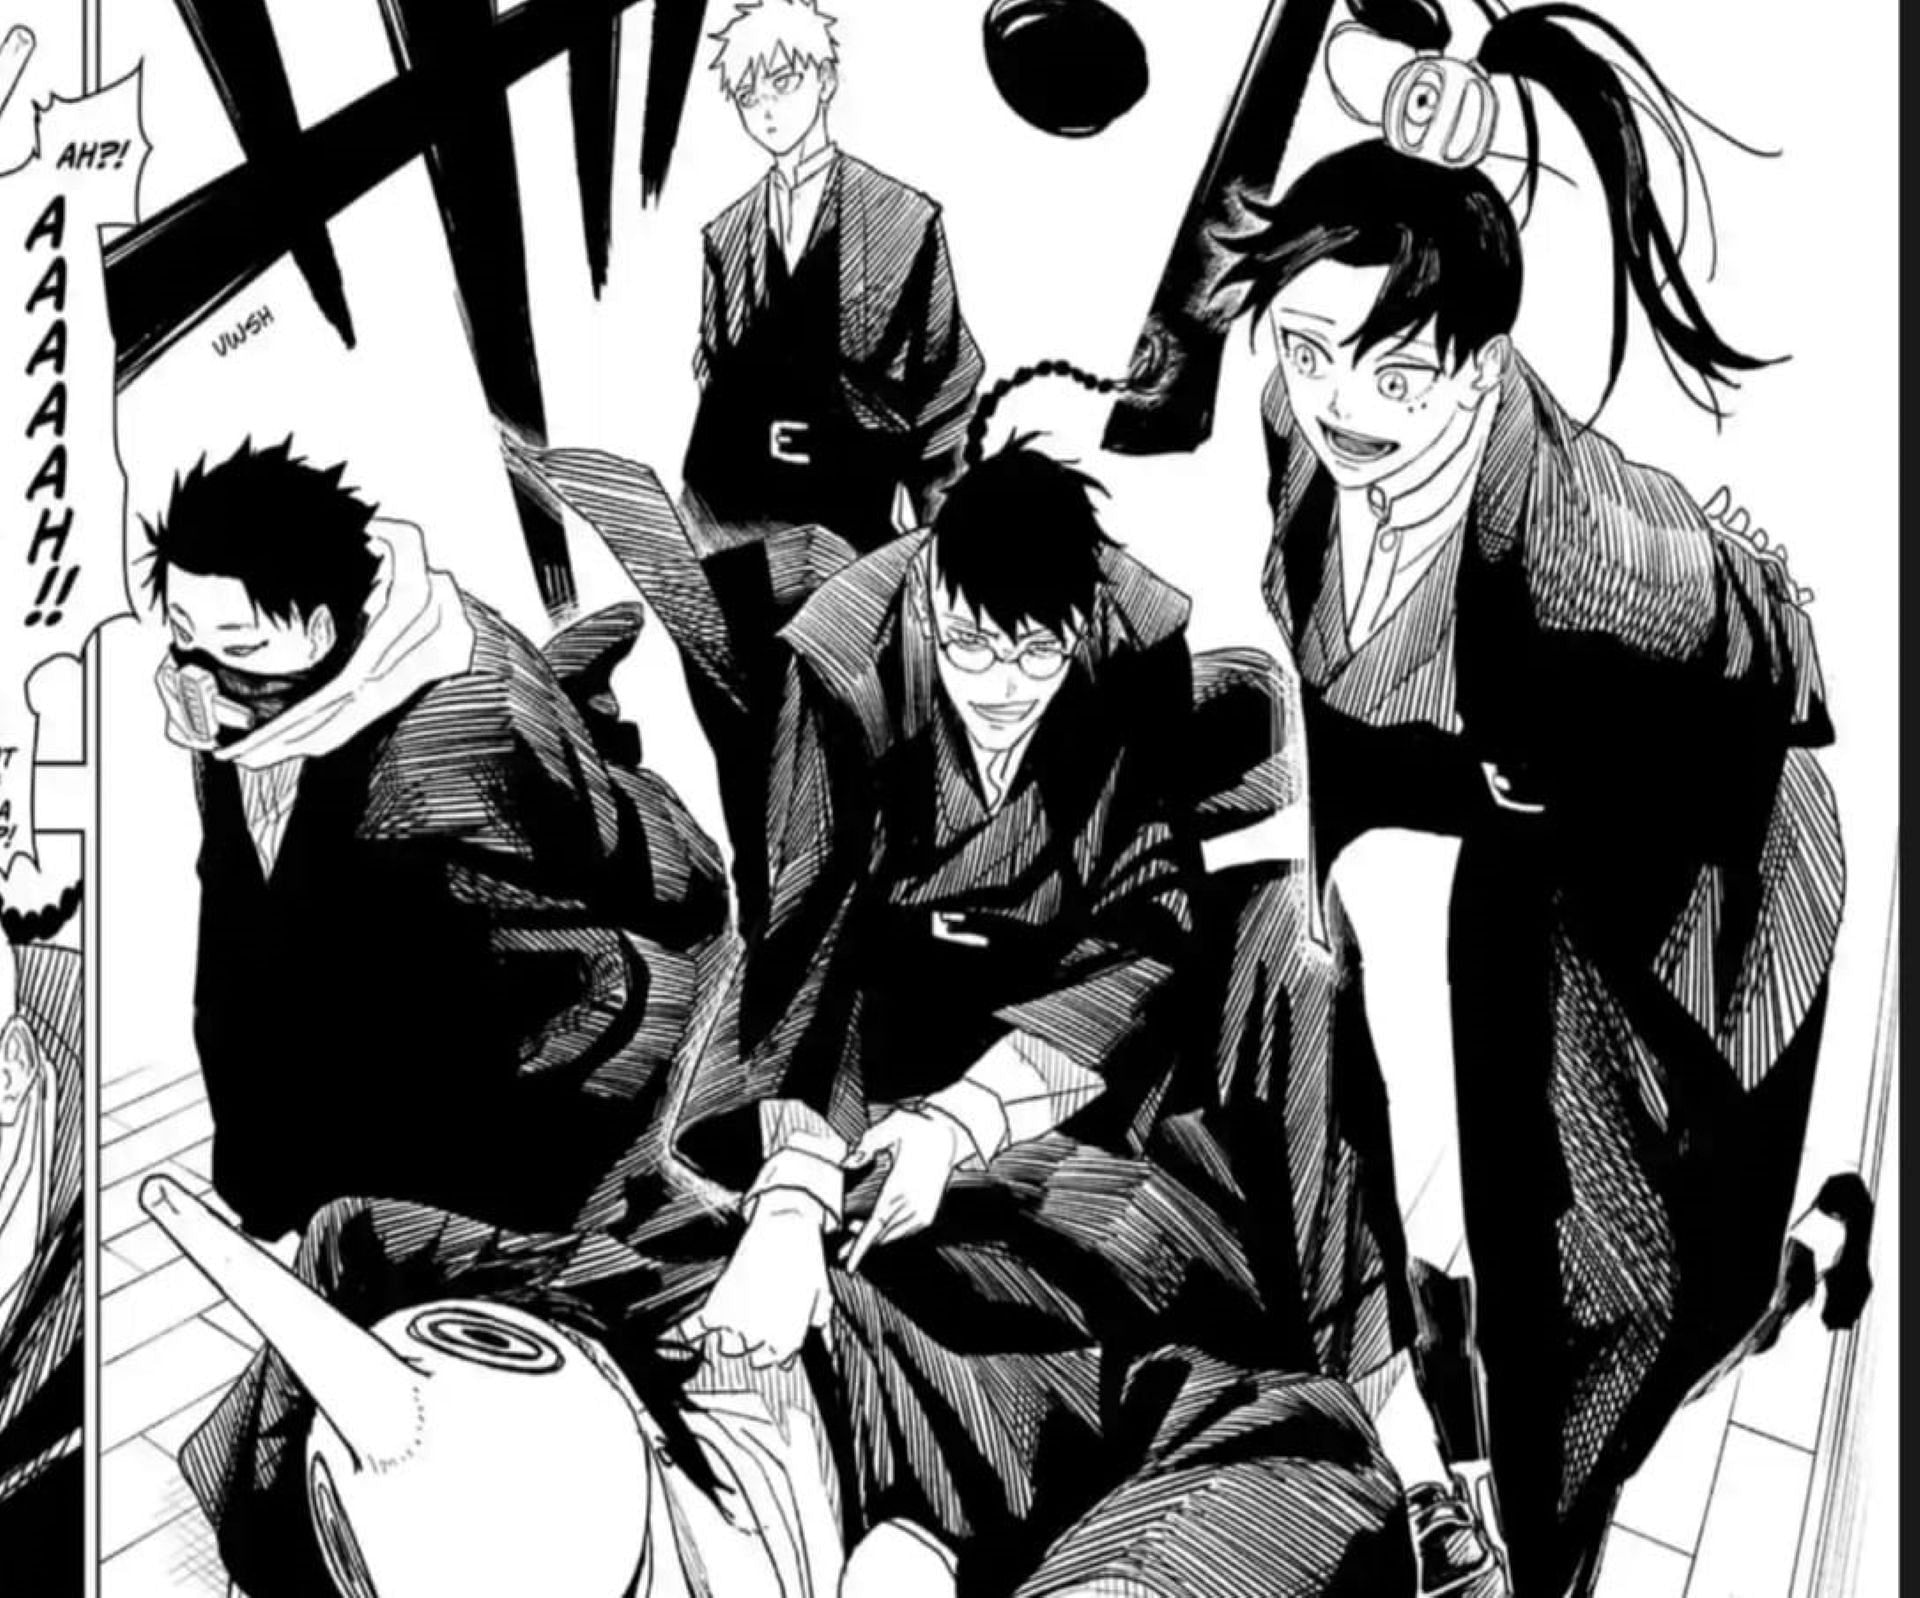 Kamunabi Elite Squad, as seen in the manga (Image via Takeru Hokazono/Shueisha)